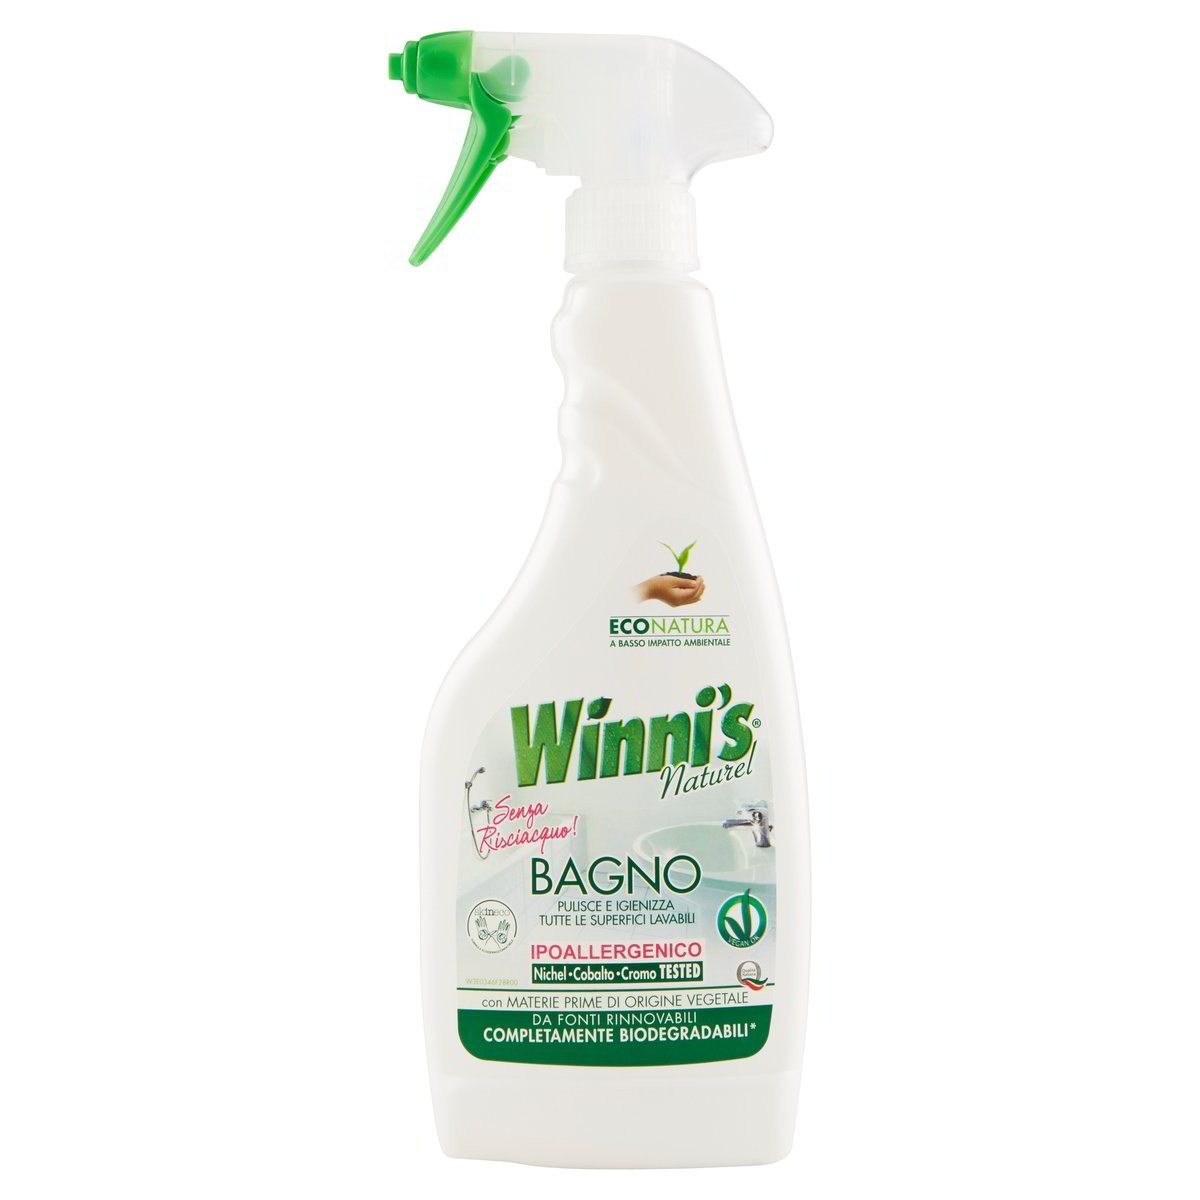 Winni's Detergente Spray Bagno ecologico